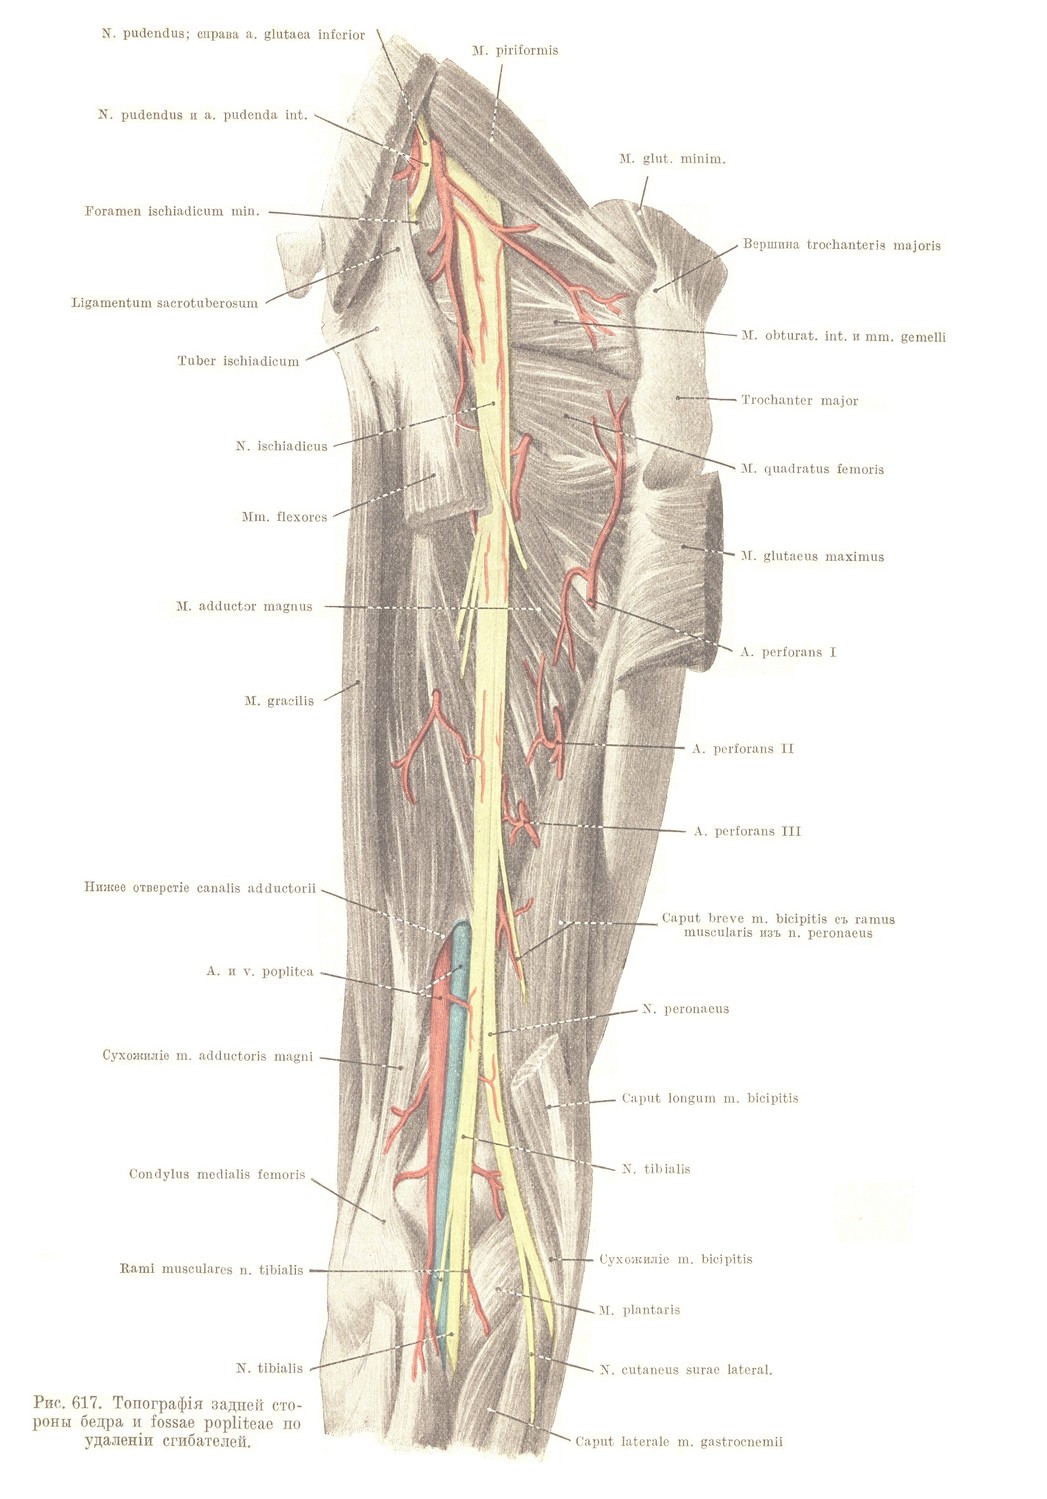 Regio femoris posterior